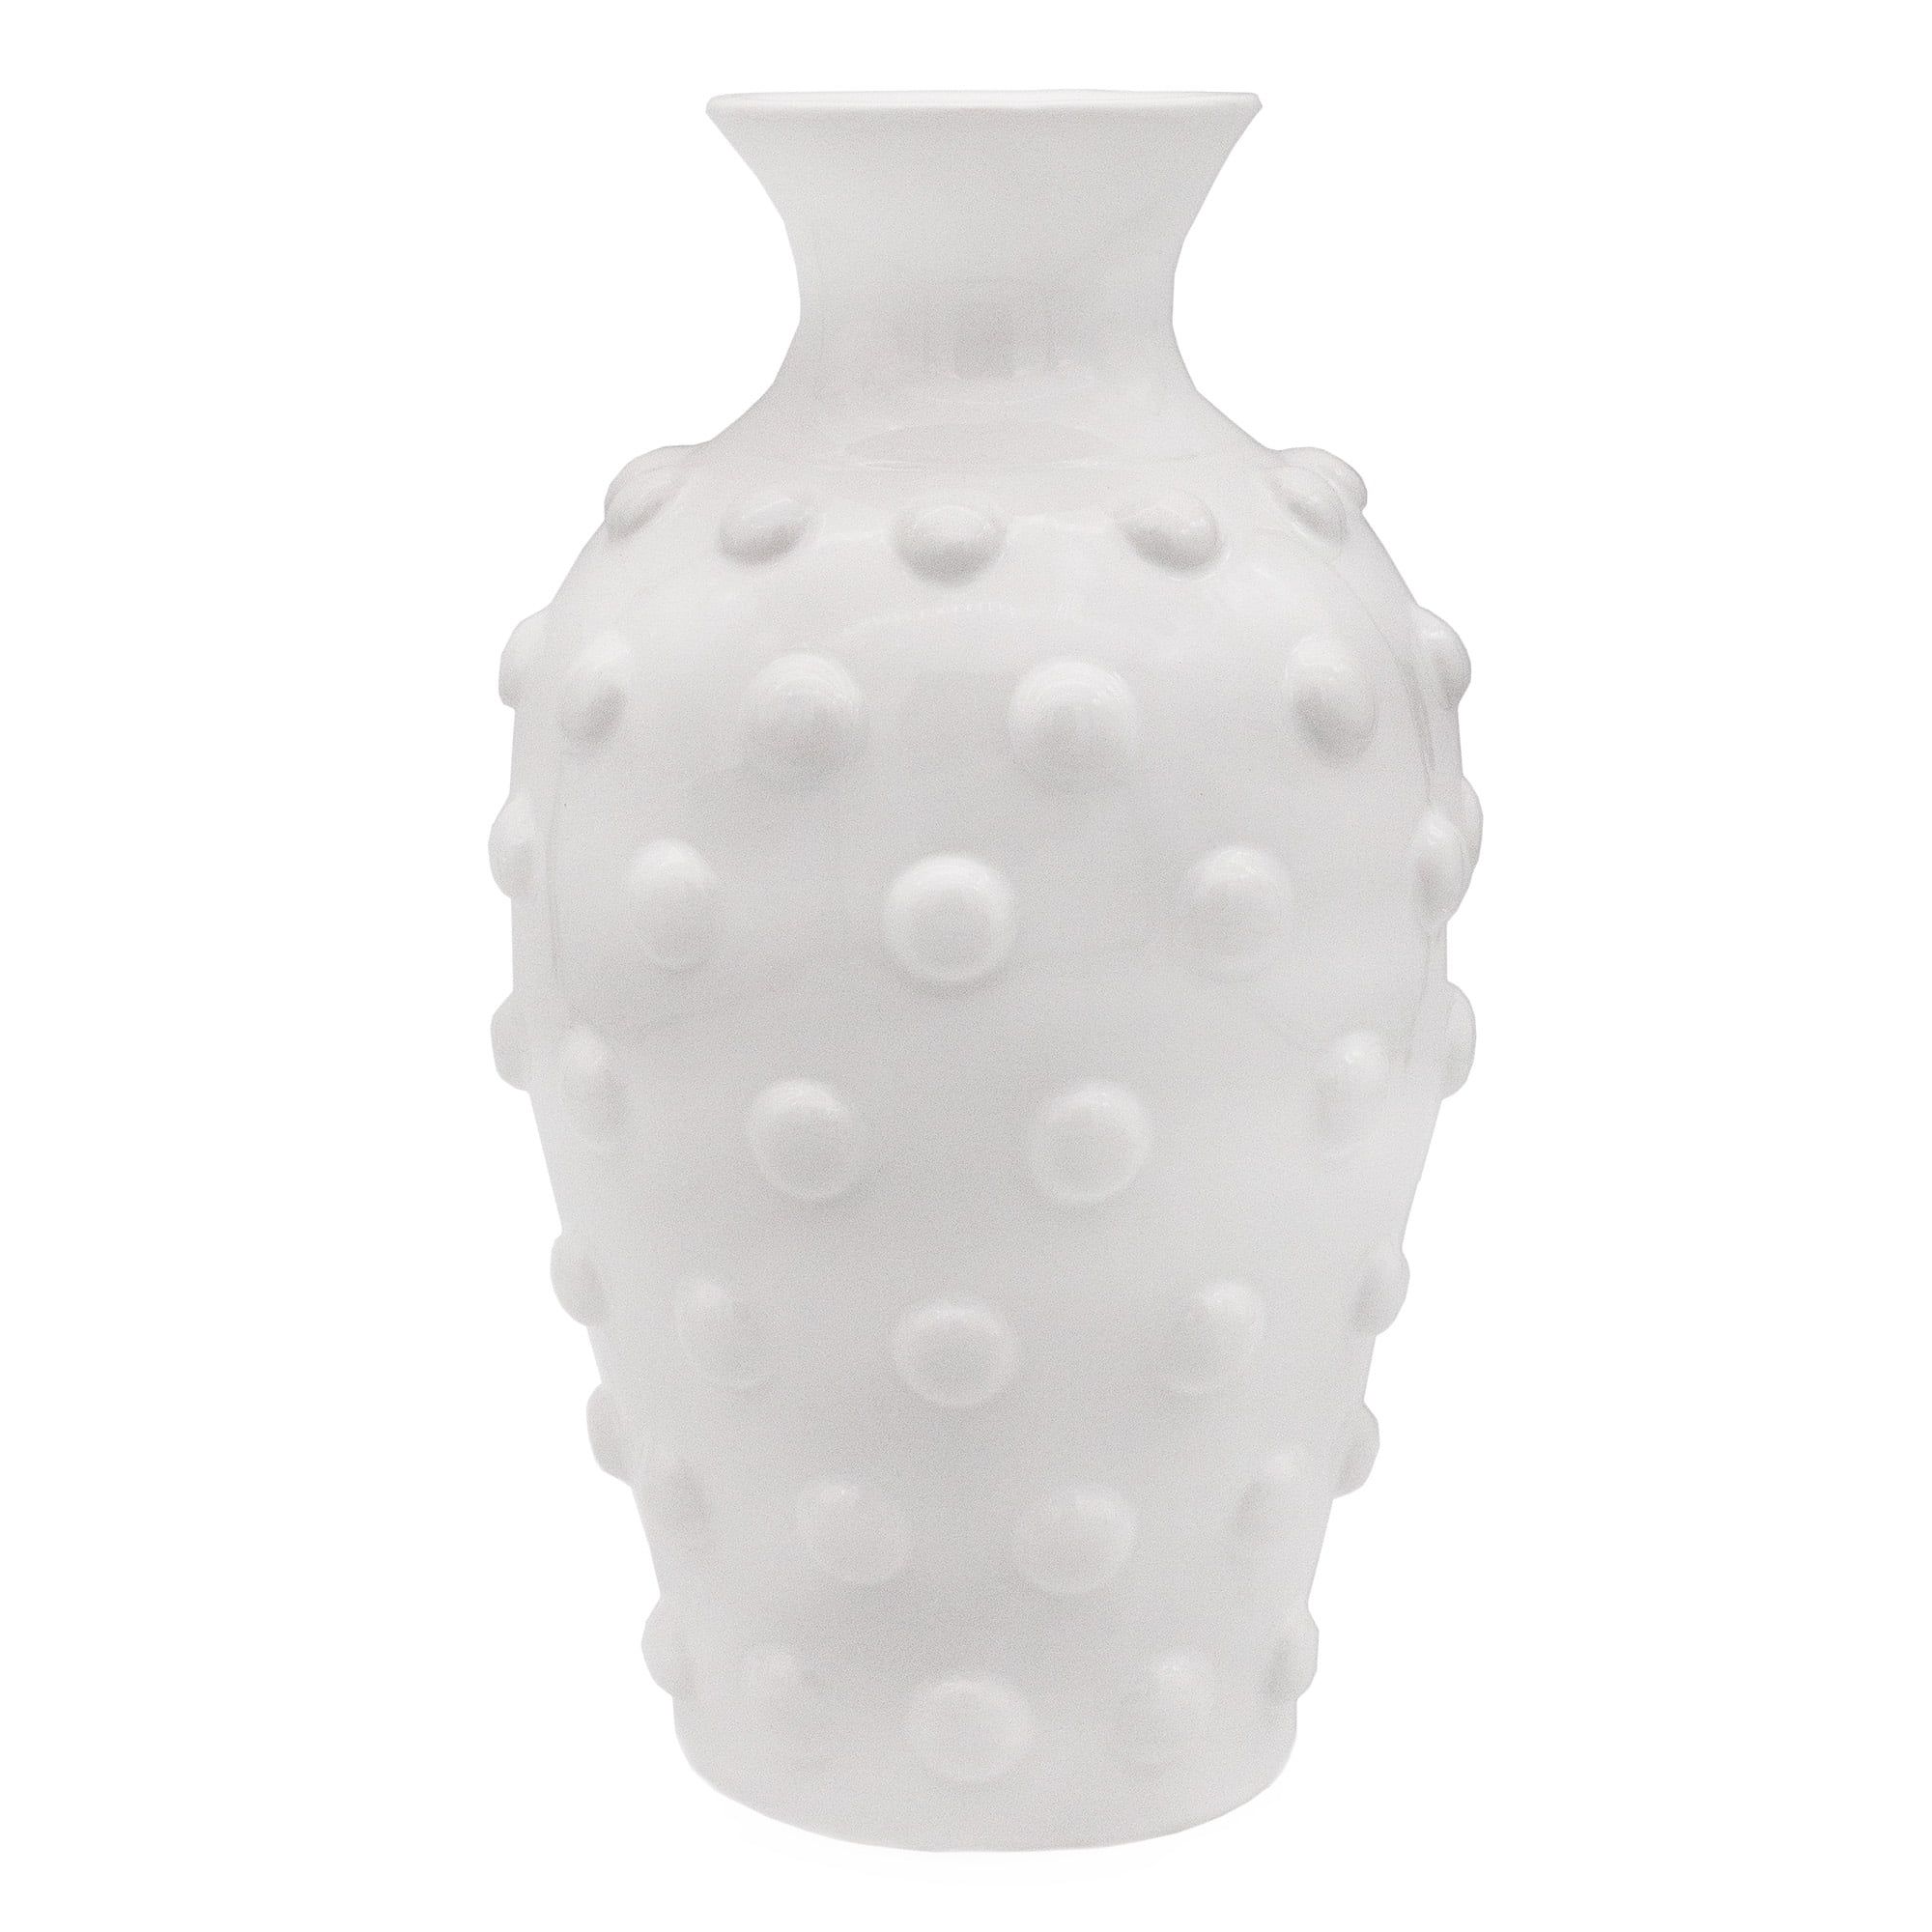 AuldHome Old-Fashioned White Hobnail Vase; Vintage Decor for Home, Office, Events - Walmart.com | Walmart (US)